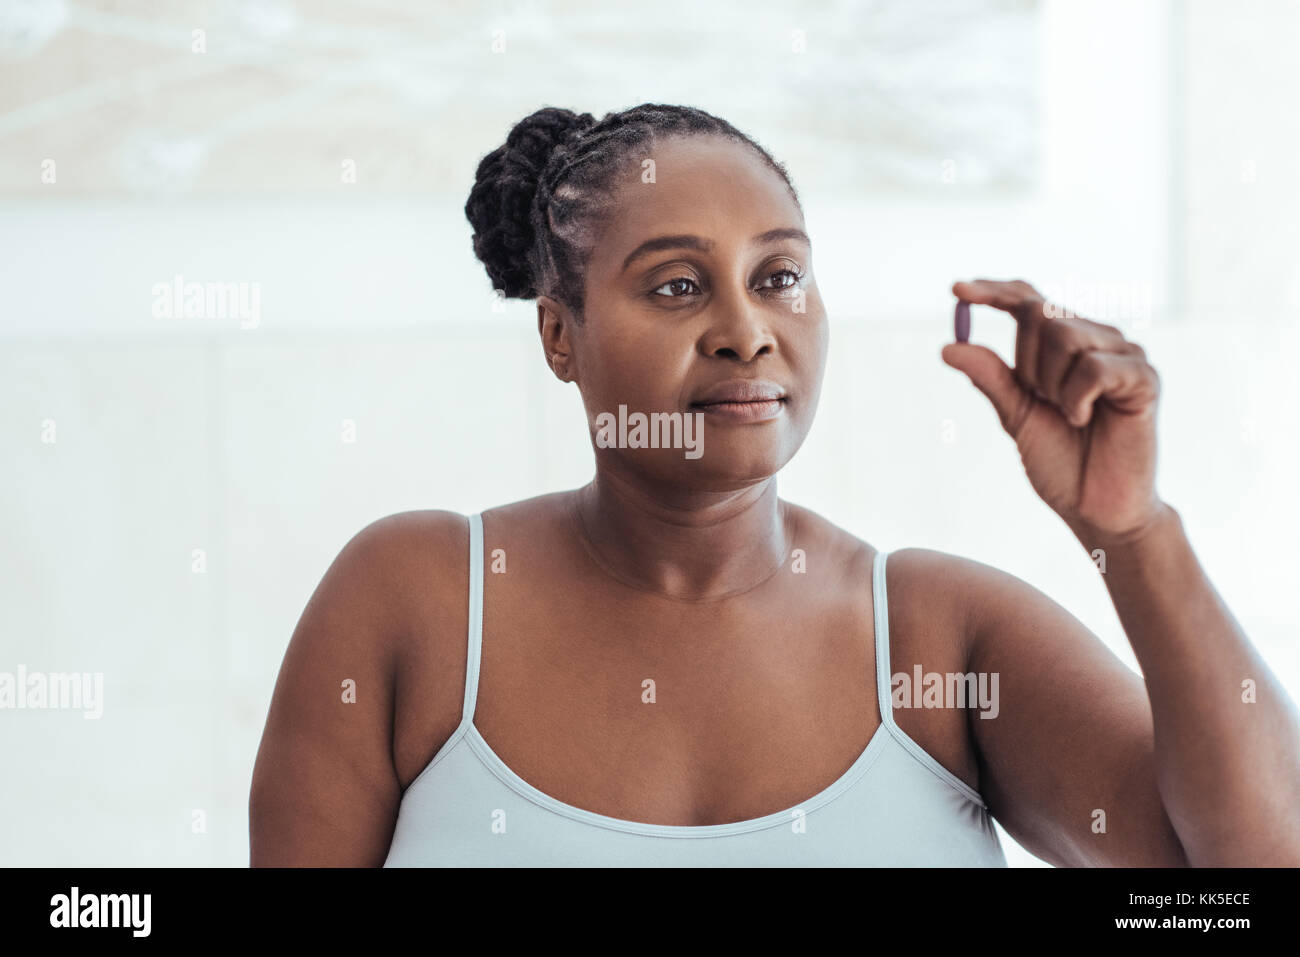 Ansiosa mujer africana mirando una píldora en su mano Foto de stock